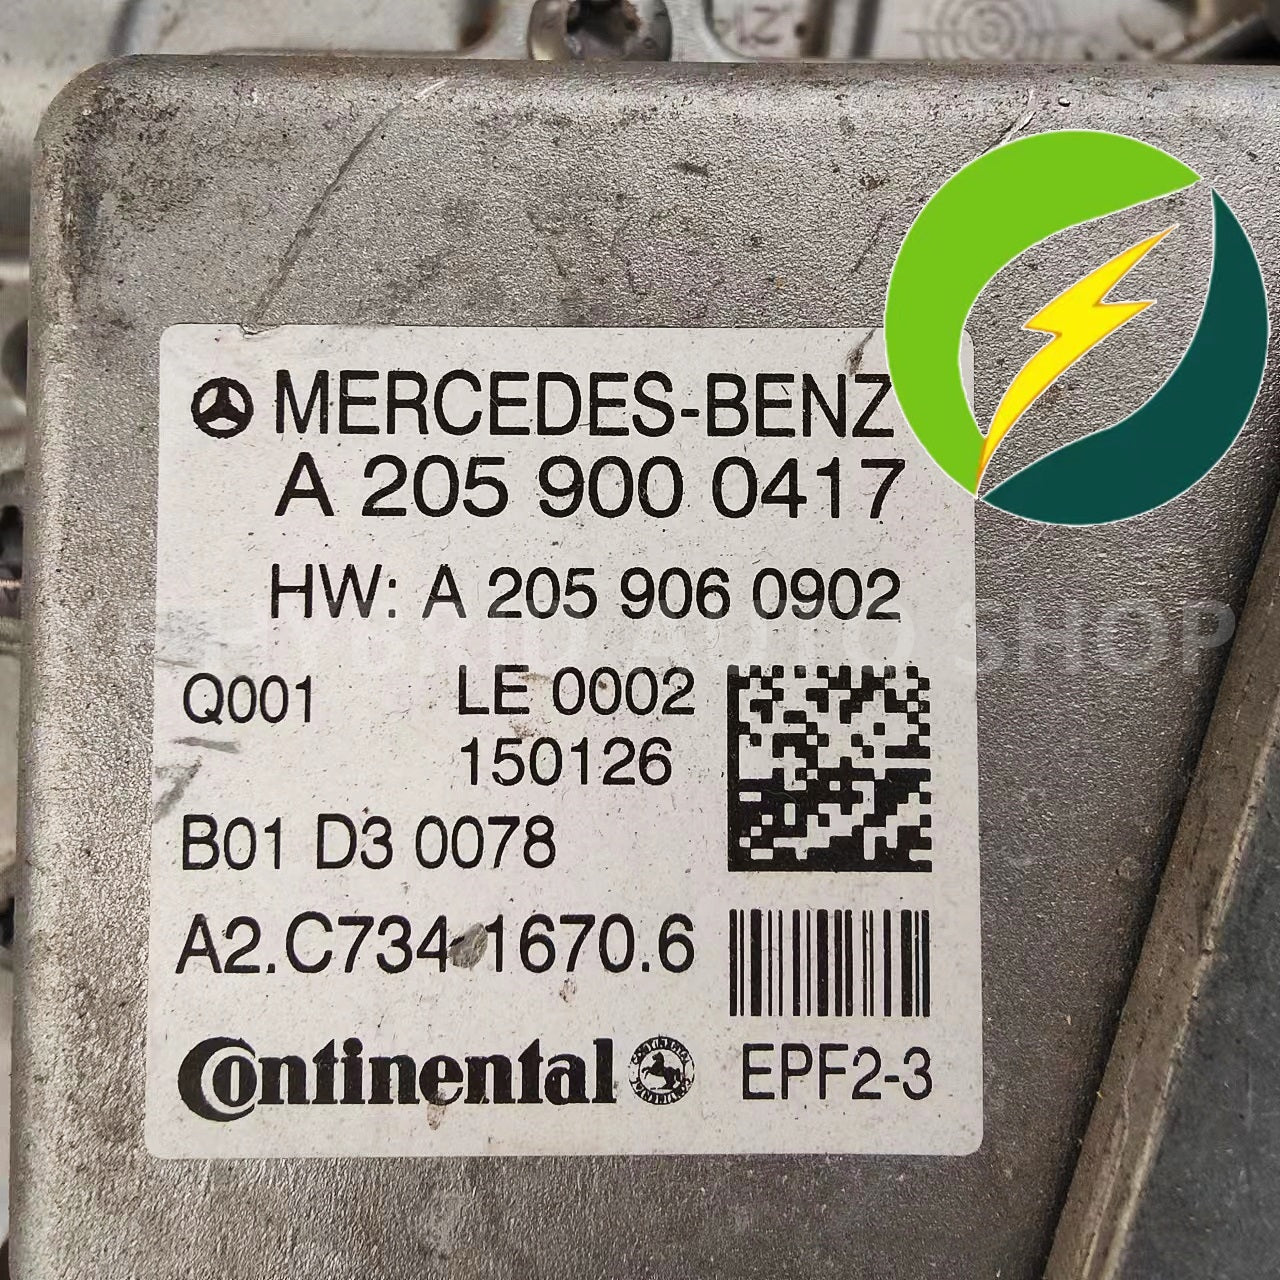 Mercedes-Benz W205 C Class C350 Hybrid High Voltage Inverter DC Converter